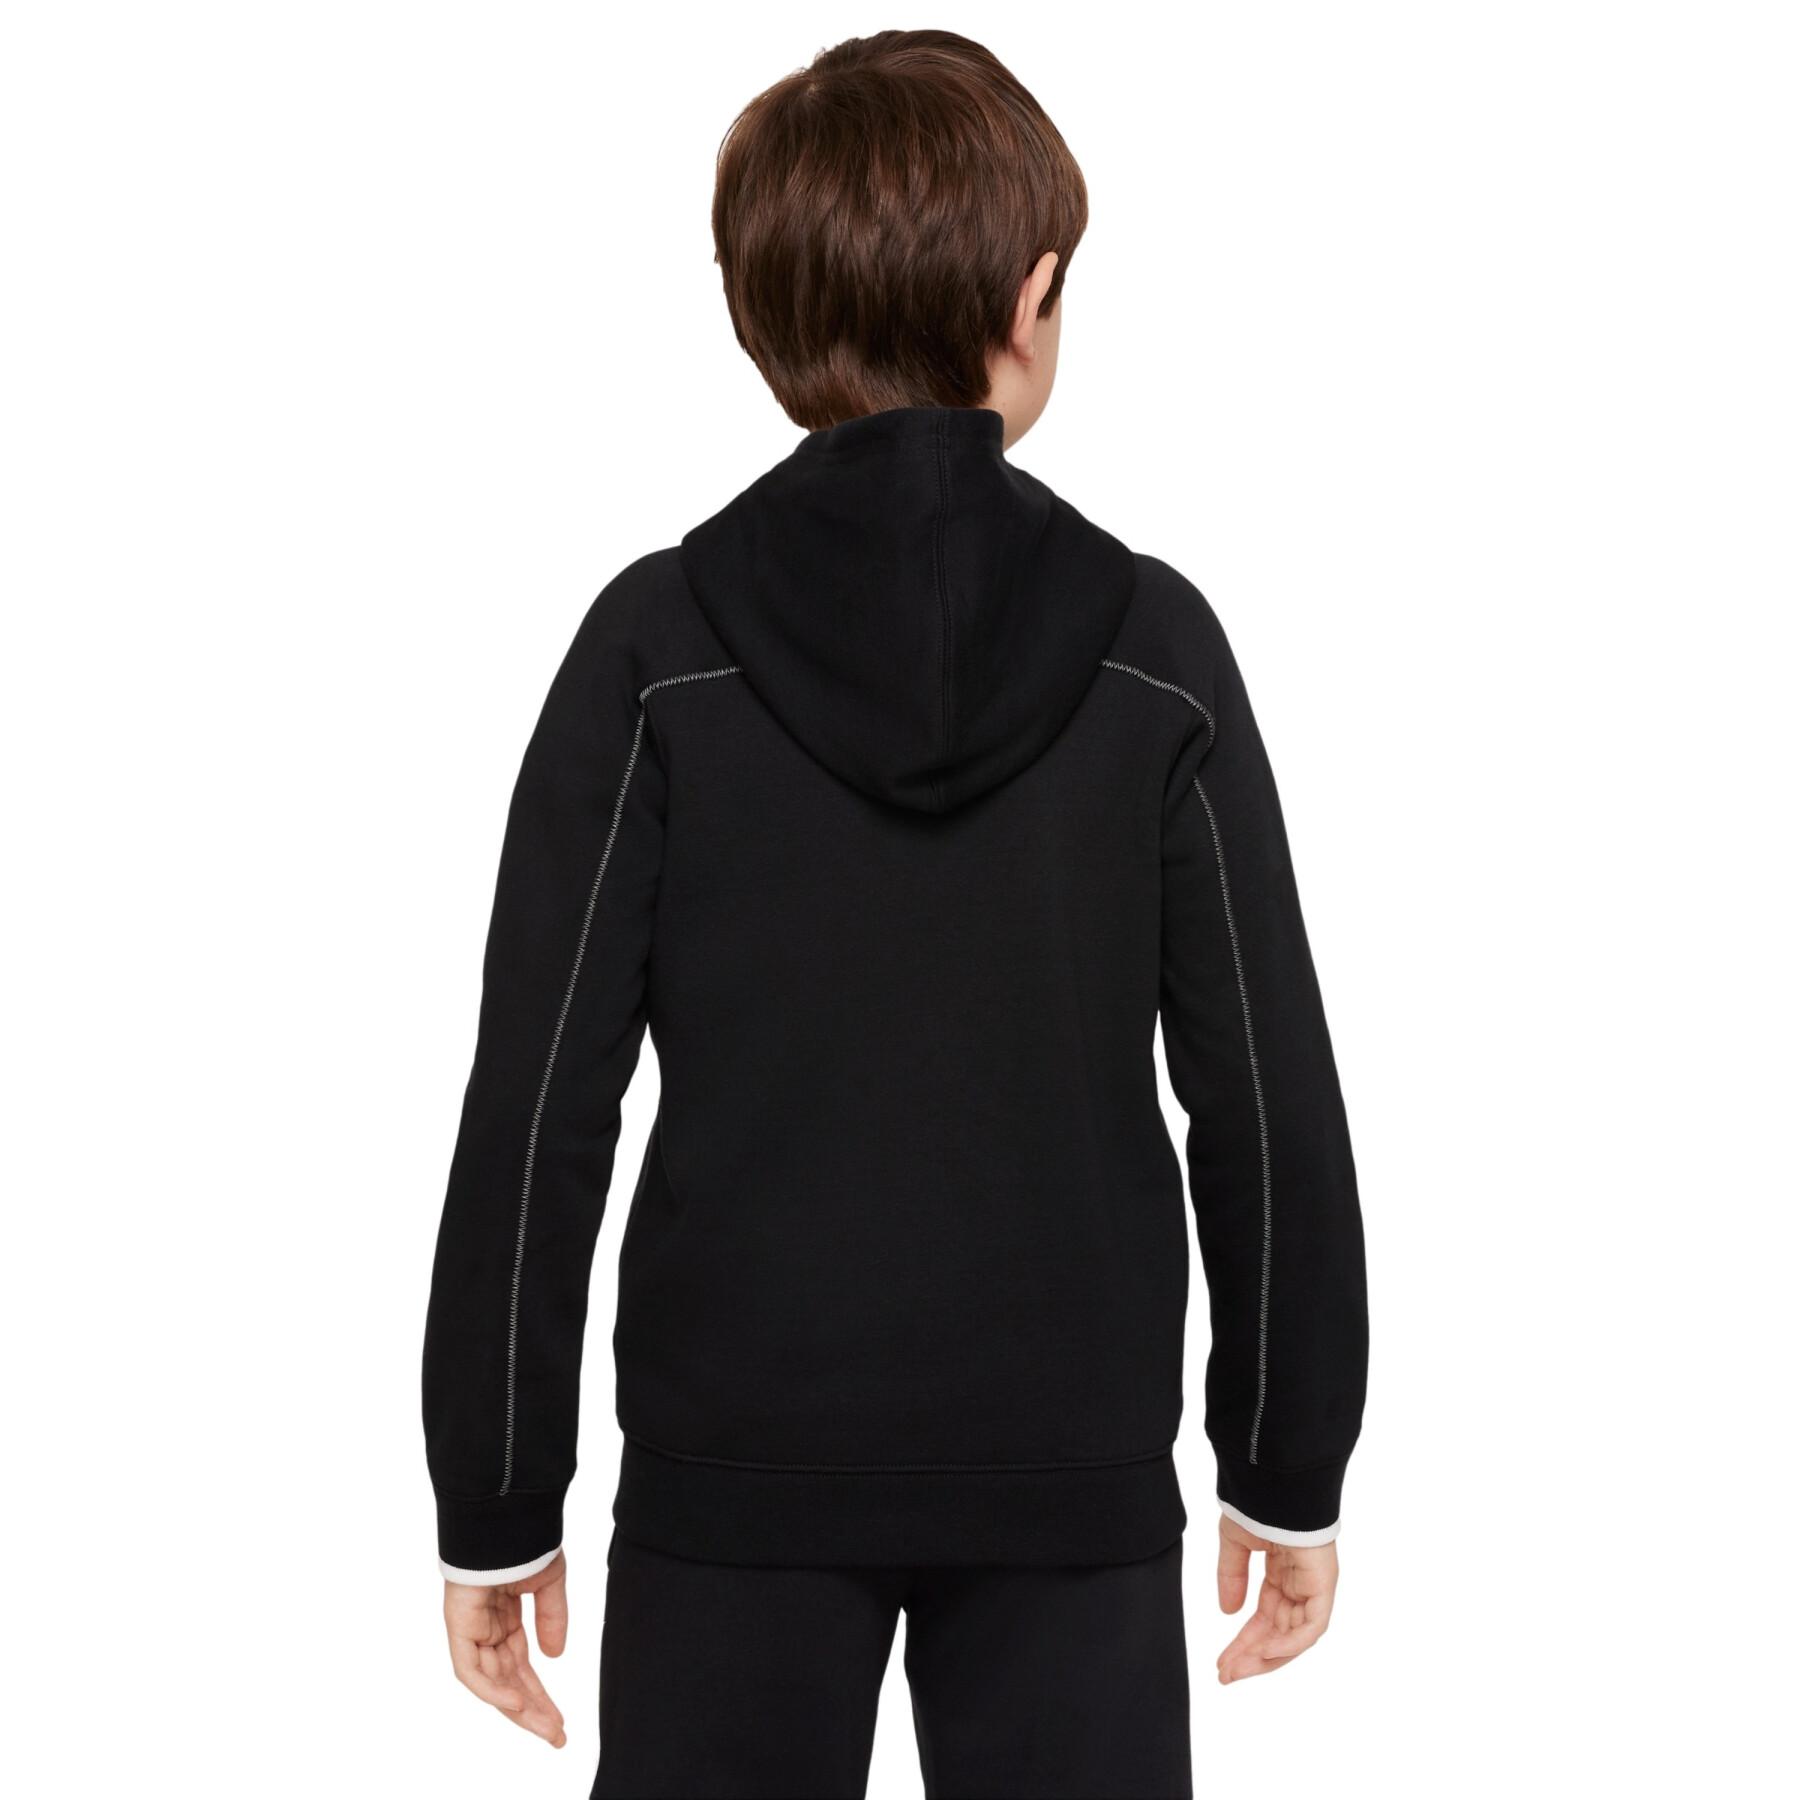 Children's tracksuit jacket Nike Sportswear Amplify